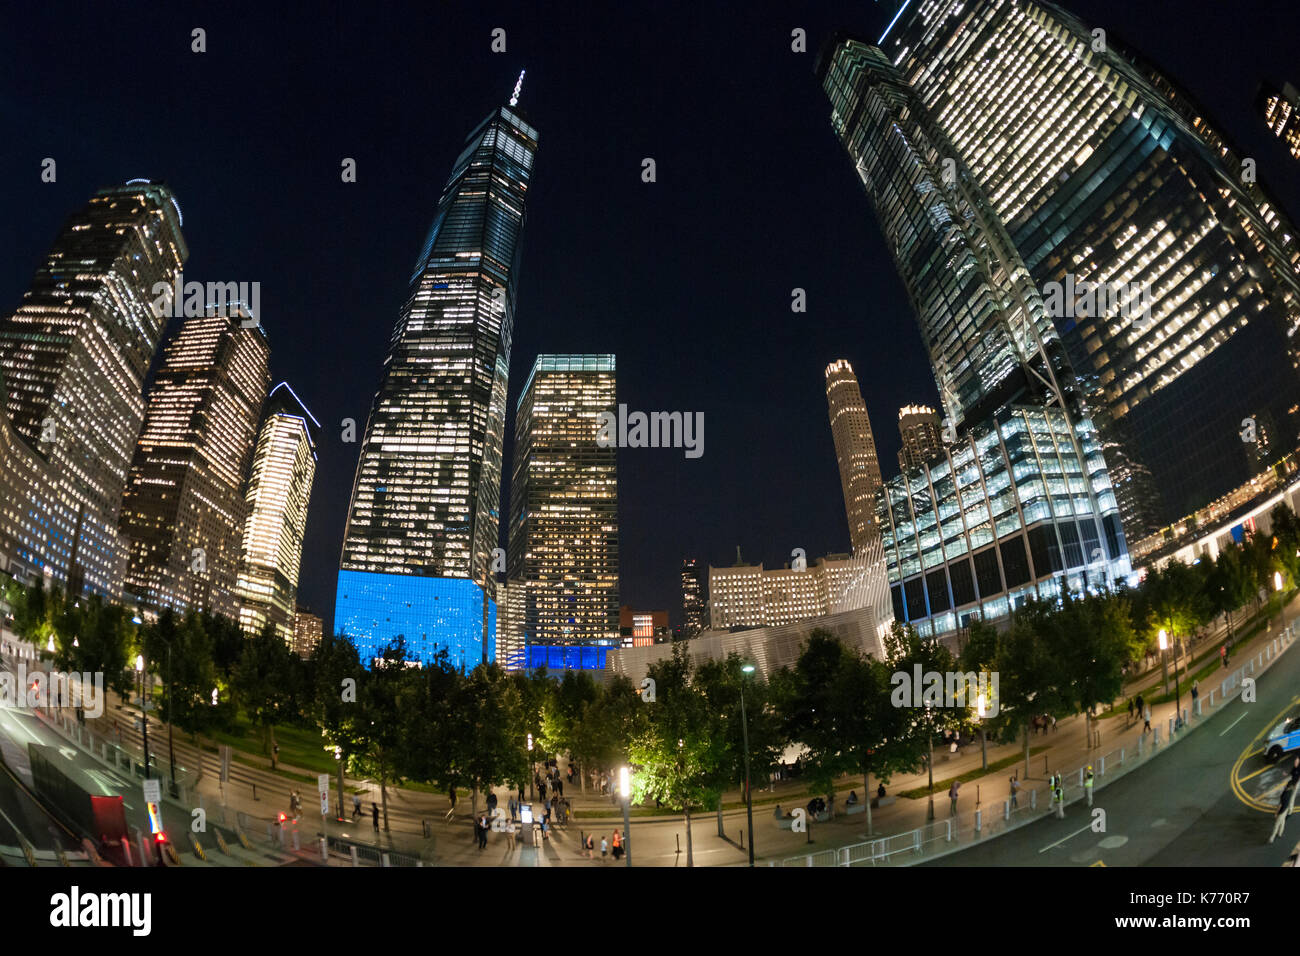 One world trade center illuminato in blu con il 9/11 memorial in new york lunedì, 11 settembre 2017 sul Sedicesimo anniversario dell'11 settembre 2001 attacchi terroristici. (© richard b. levine) Foto Stock